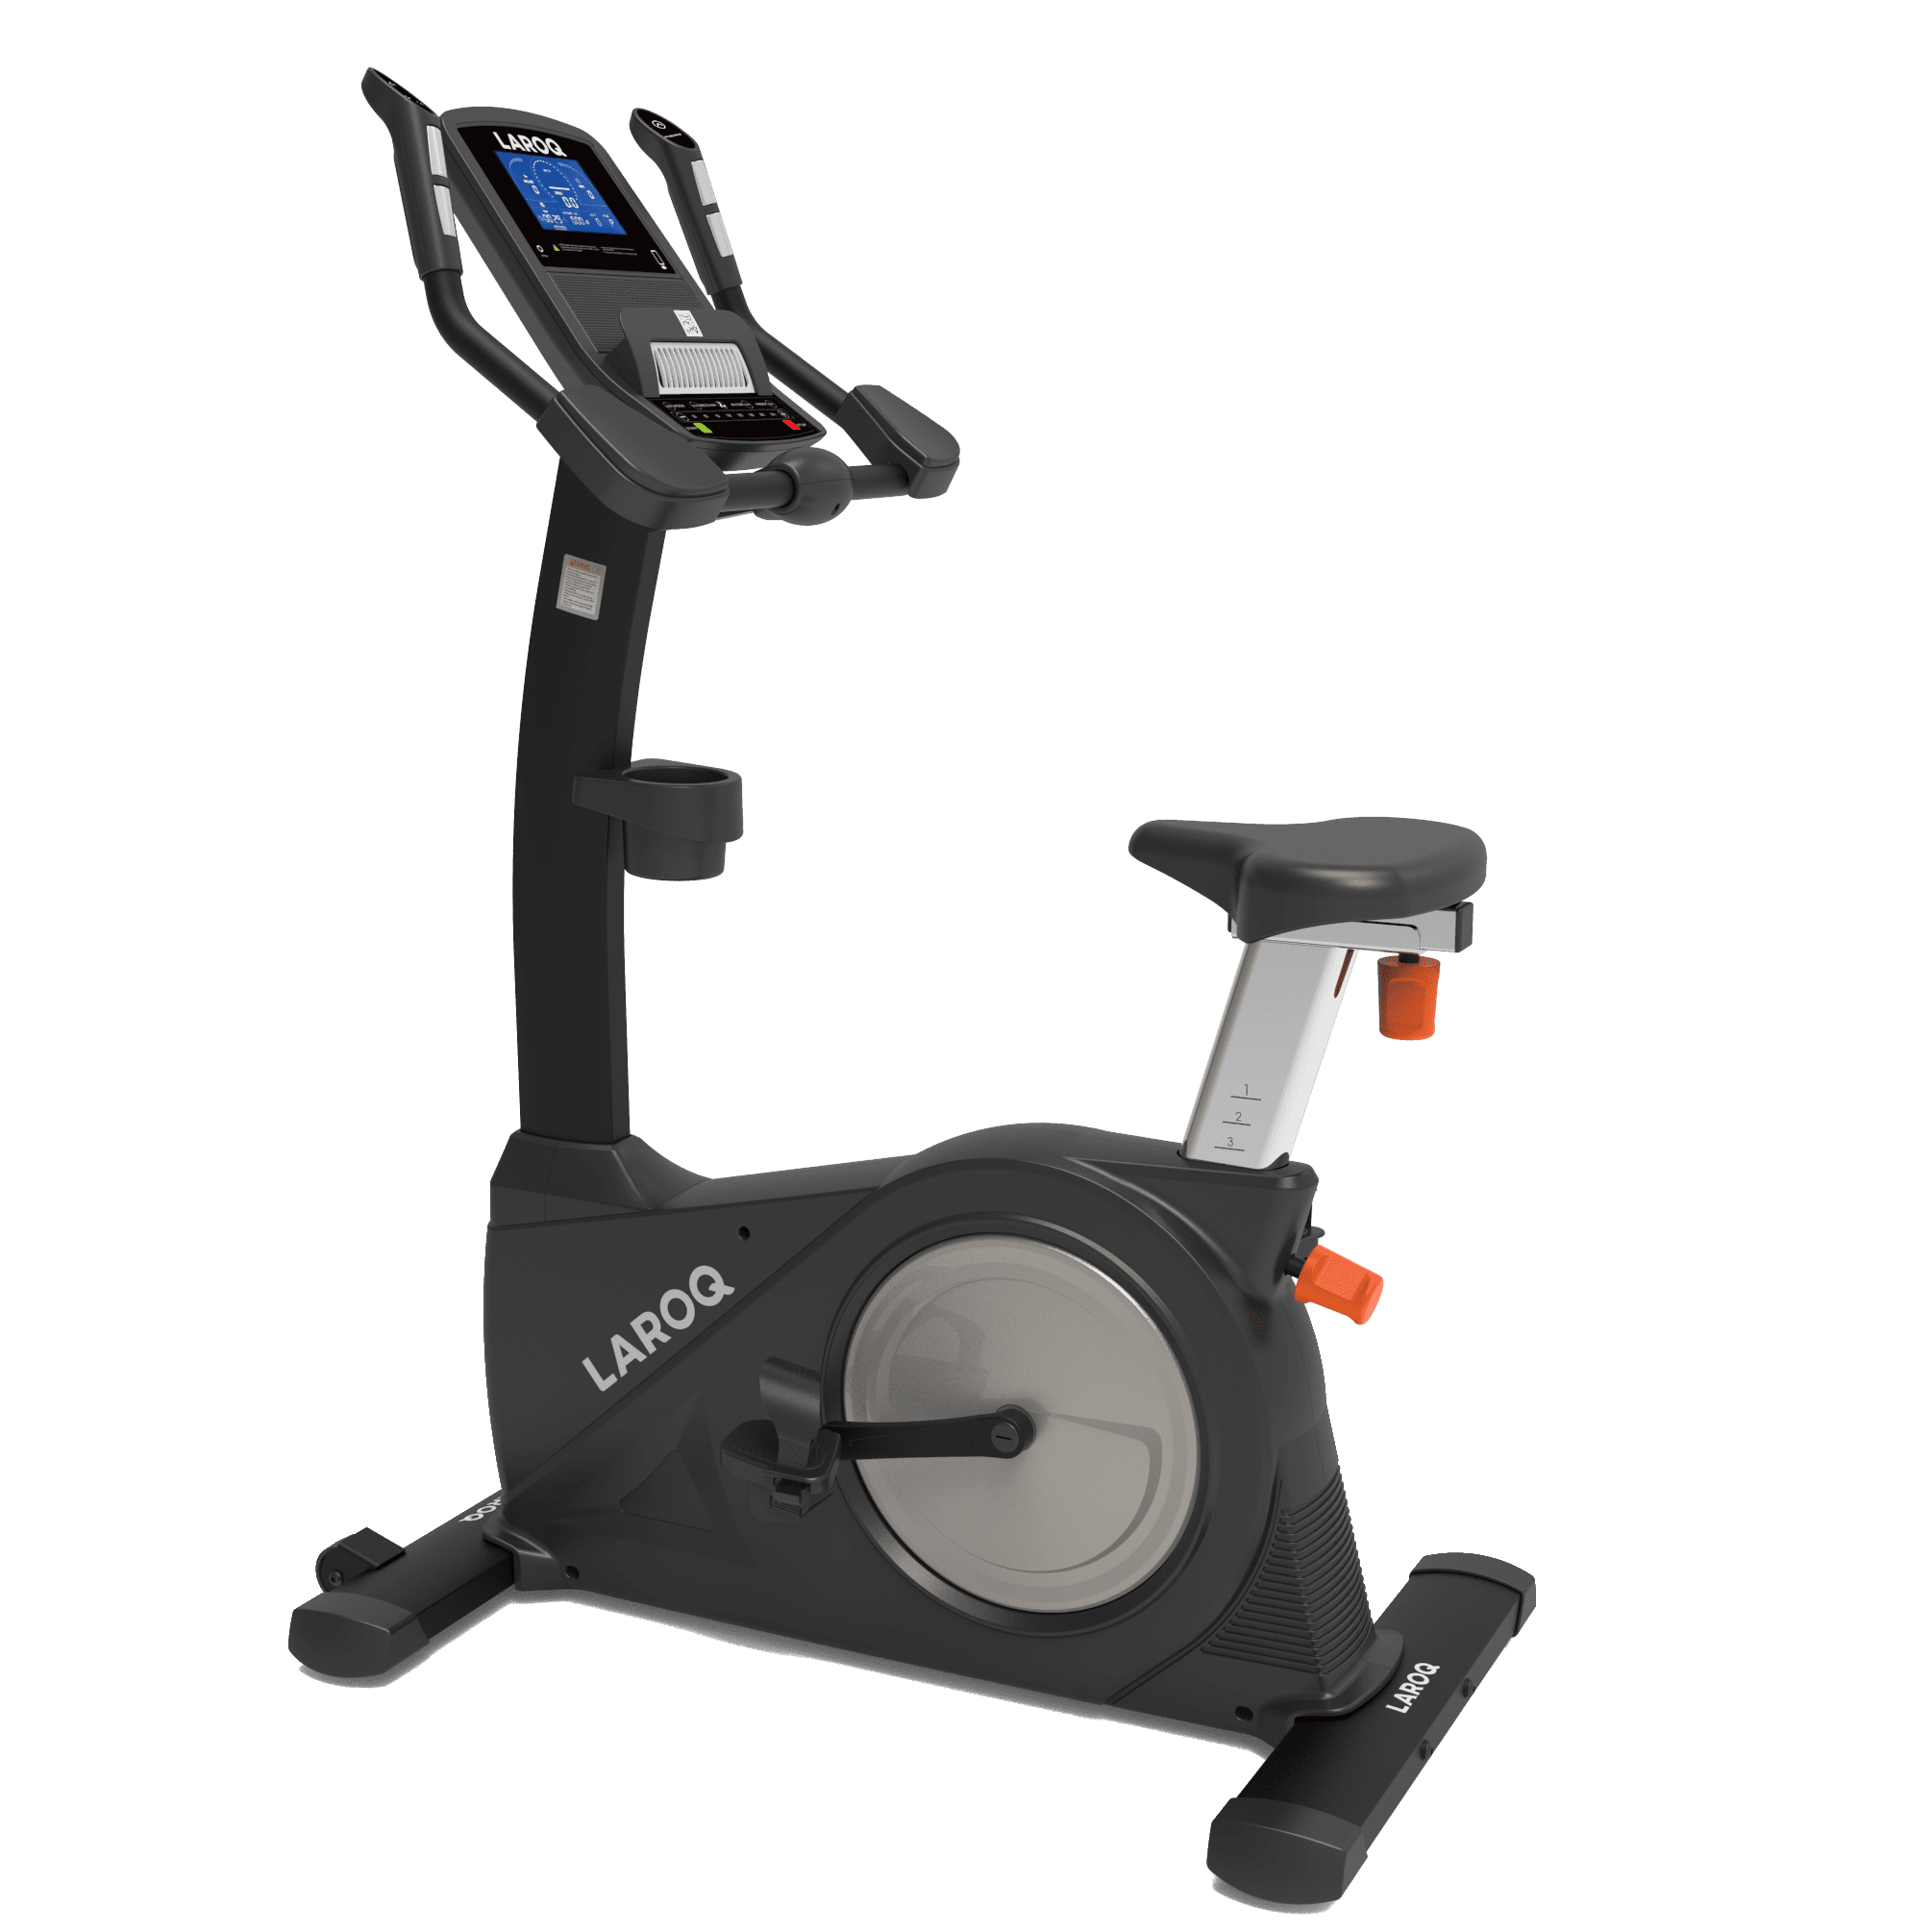 Vélo de biking pour salle de musculation ou homegym avec roue inertie 9 kg